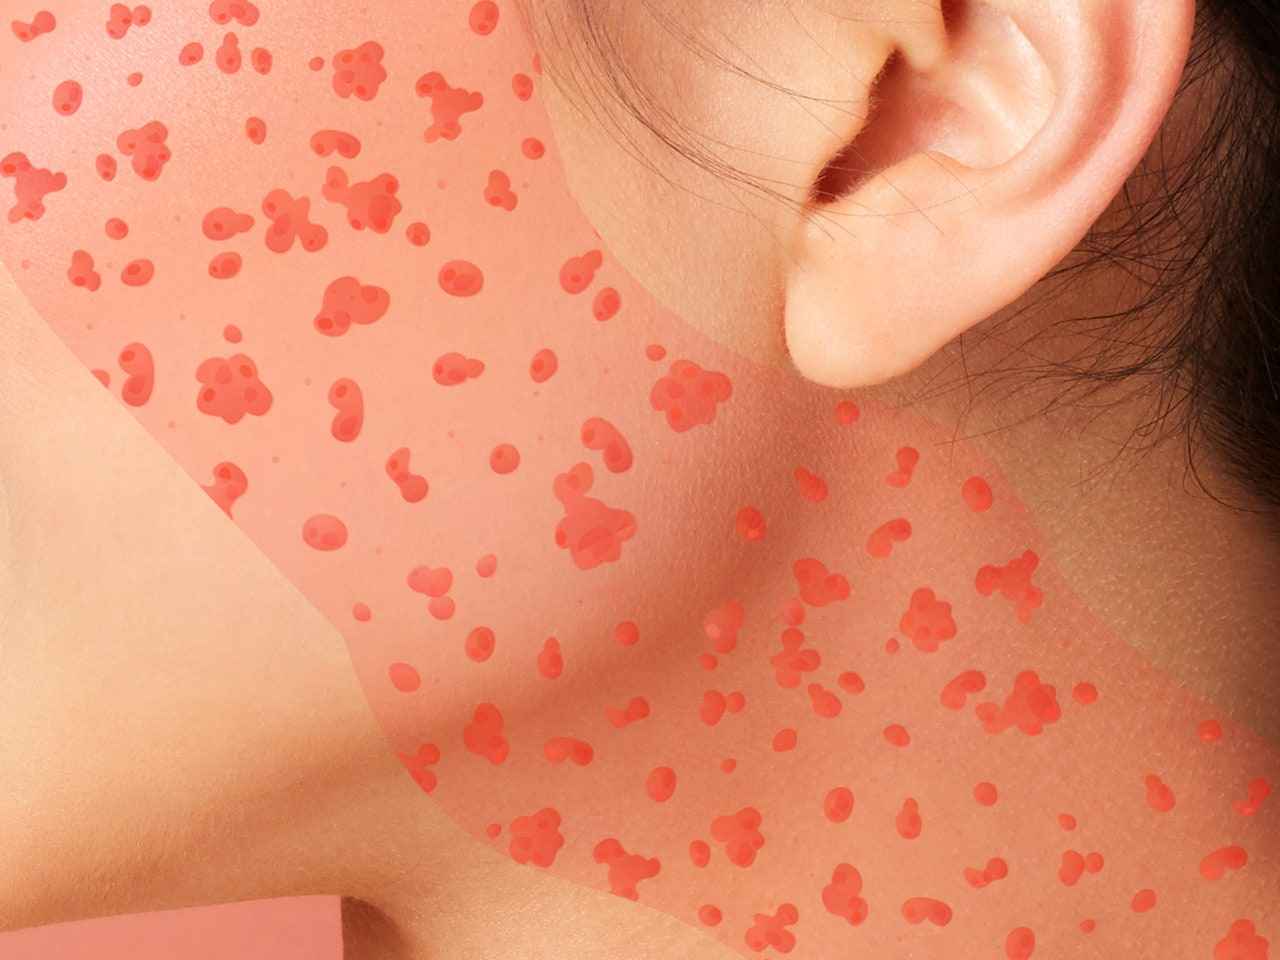 Comment prendre soin de votre peau en colère après une réaction allergique sur votre visage